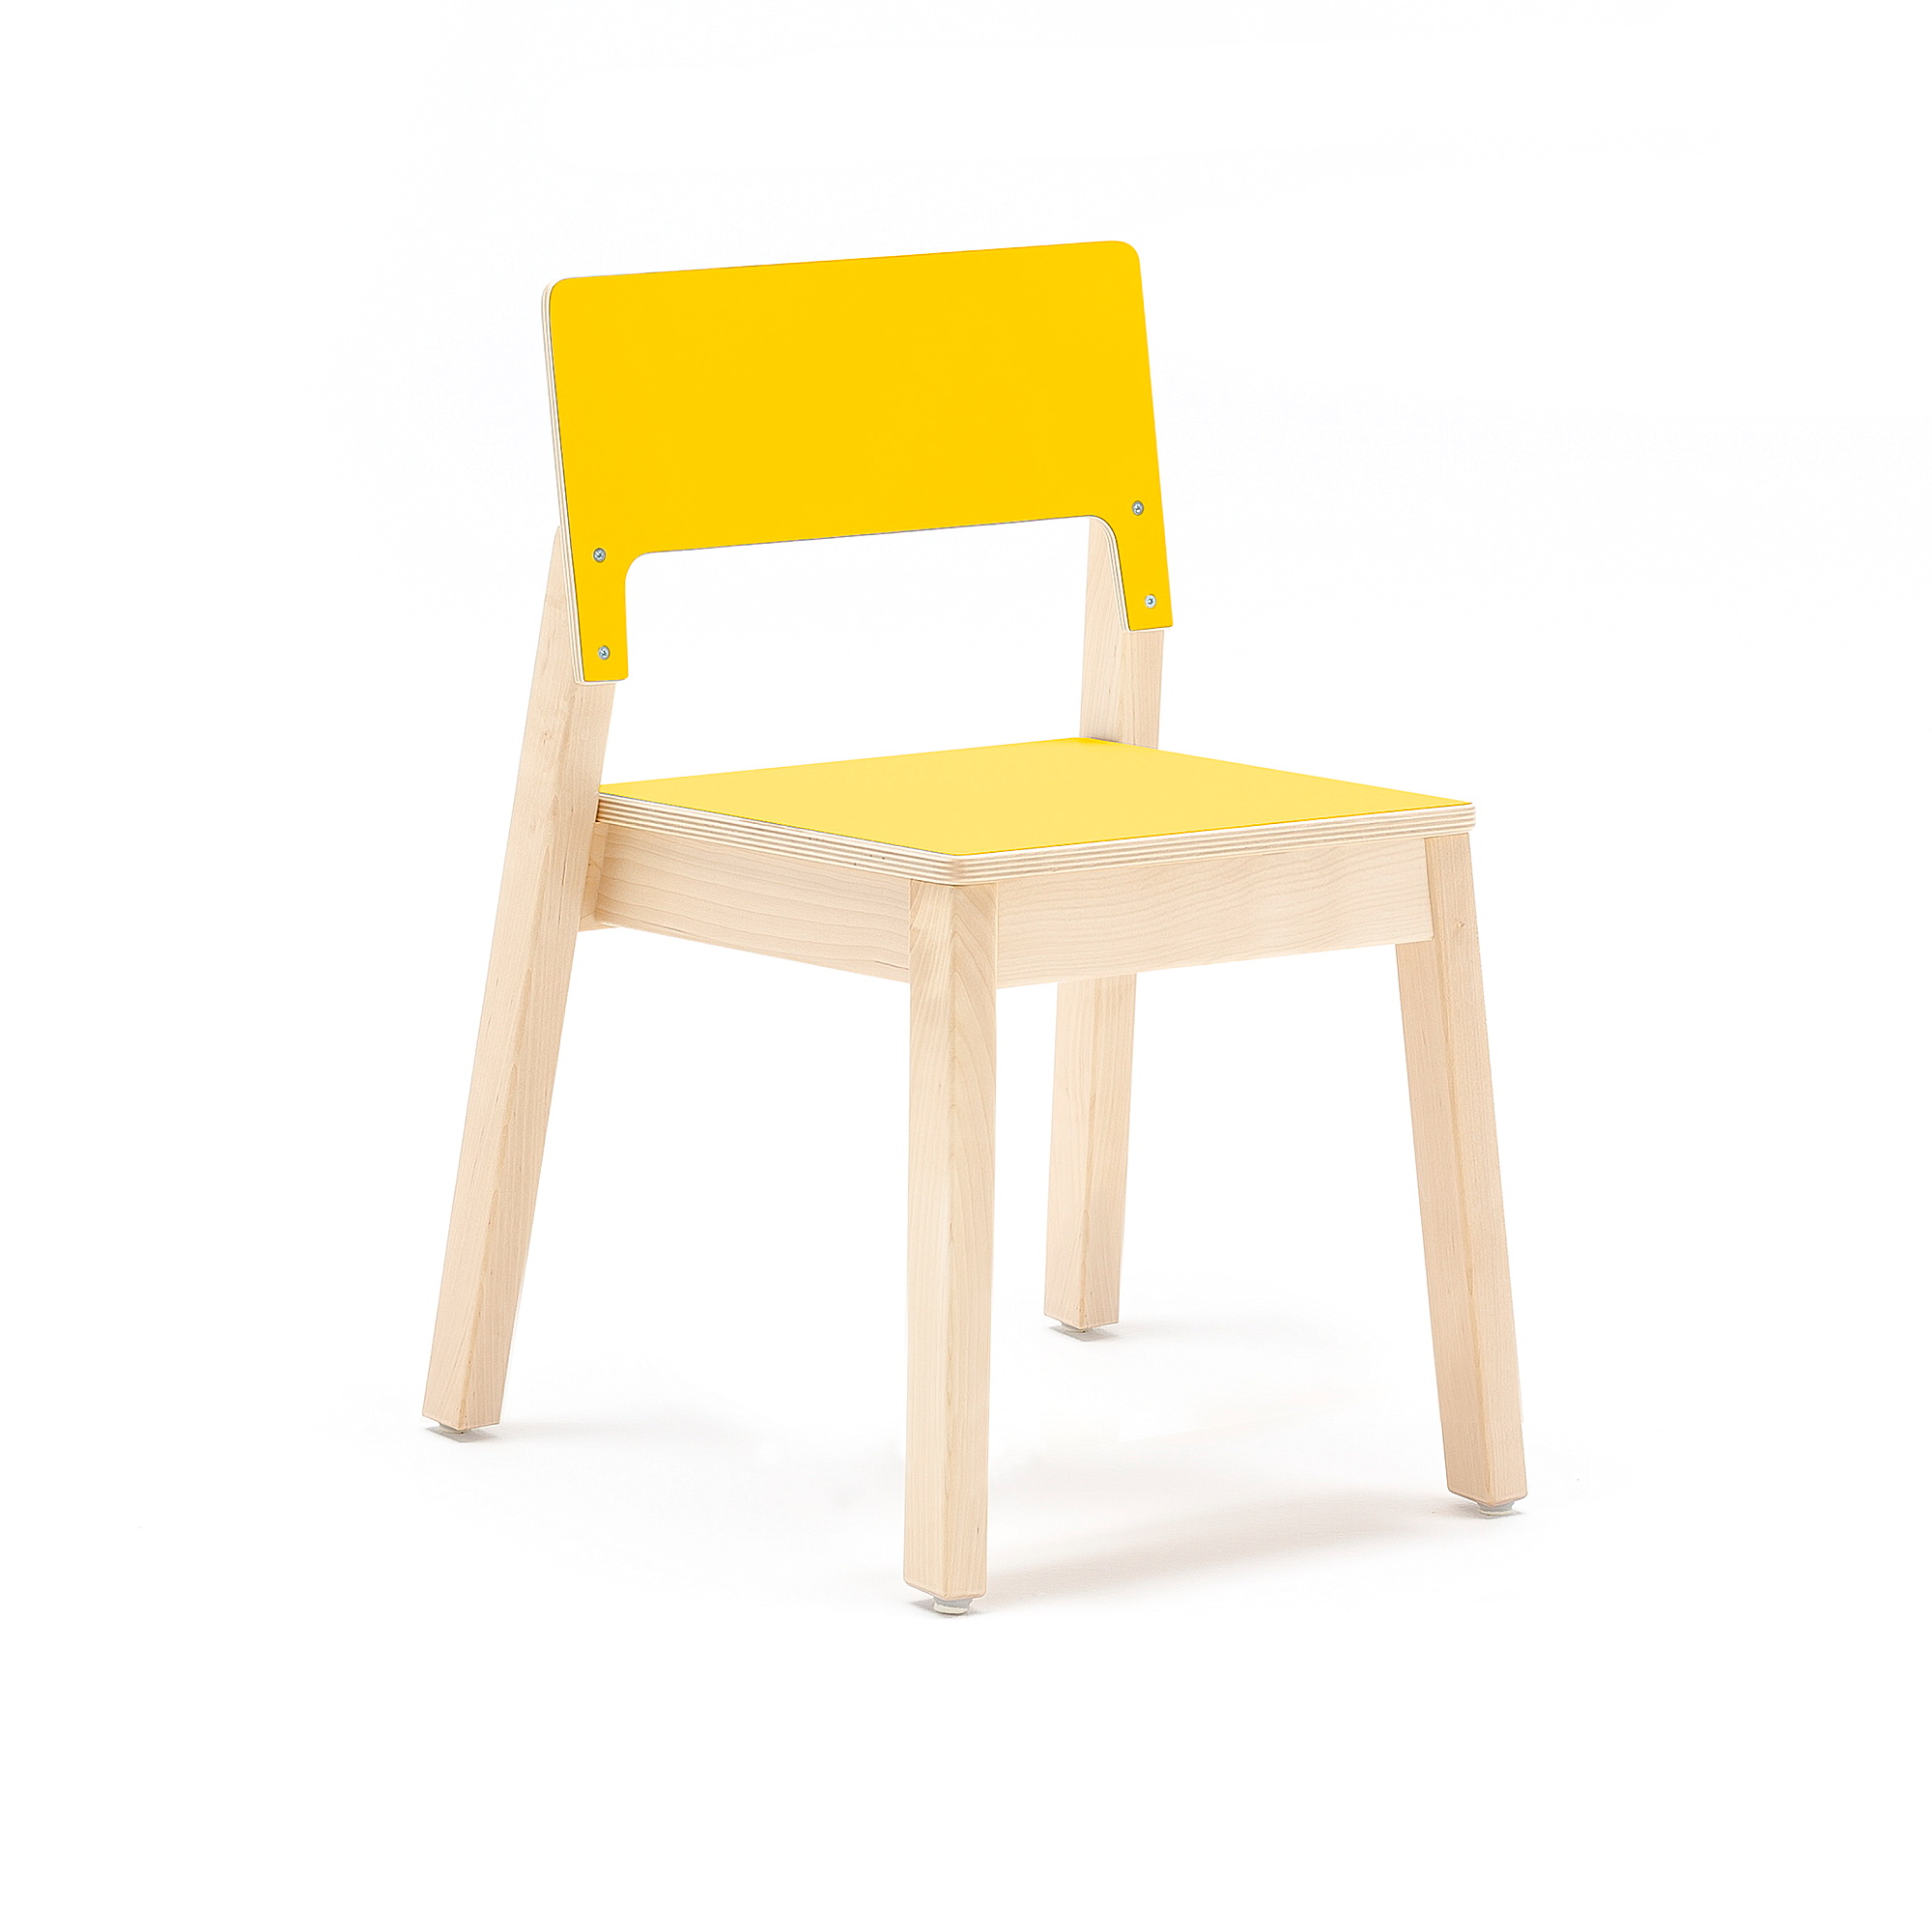 Dětská židle LOVE, výška 380 mm, bříza, žlutá